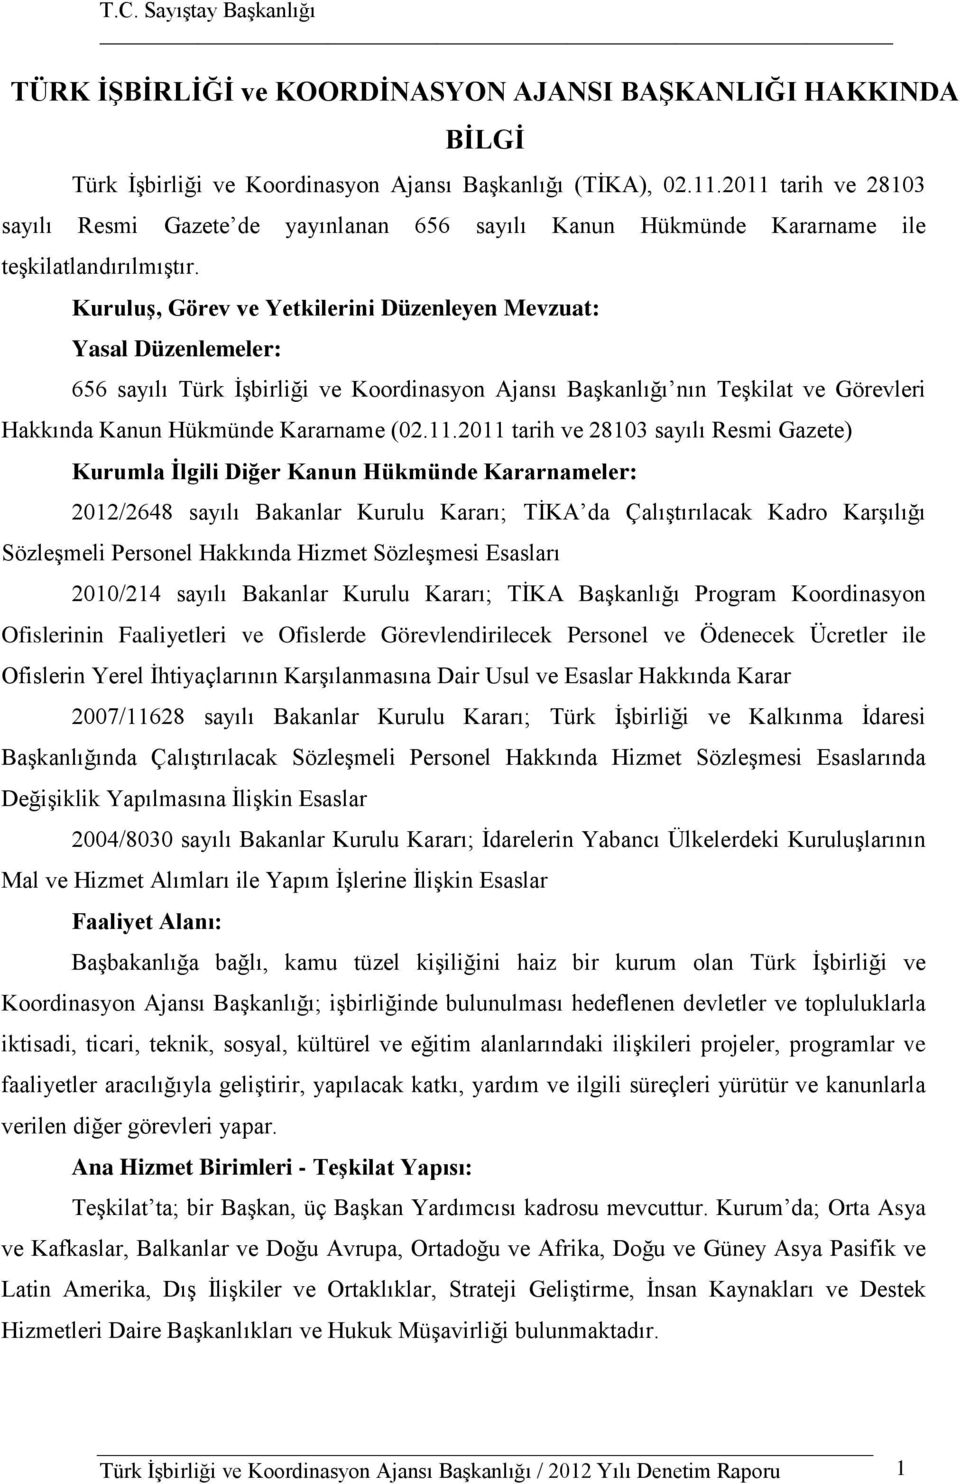 Kuruluş, Görev ve Yetkilerini Düzenleyen Mevzuat: Yasal Düzenlemeler: 656 sayılı Türk İşbirliği ve Koordinasyon Ajansı Başkanlığı nın Teşkilat ve Görevleri Hakkında Kanun Hükmünde Kararname (02.11.